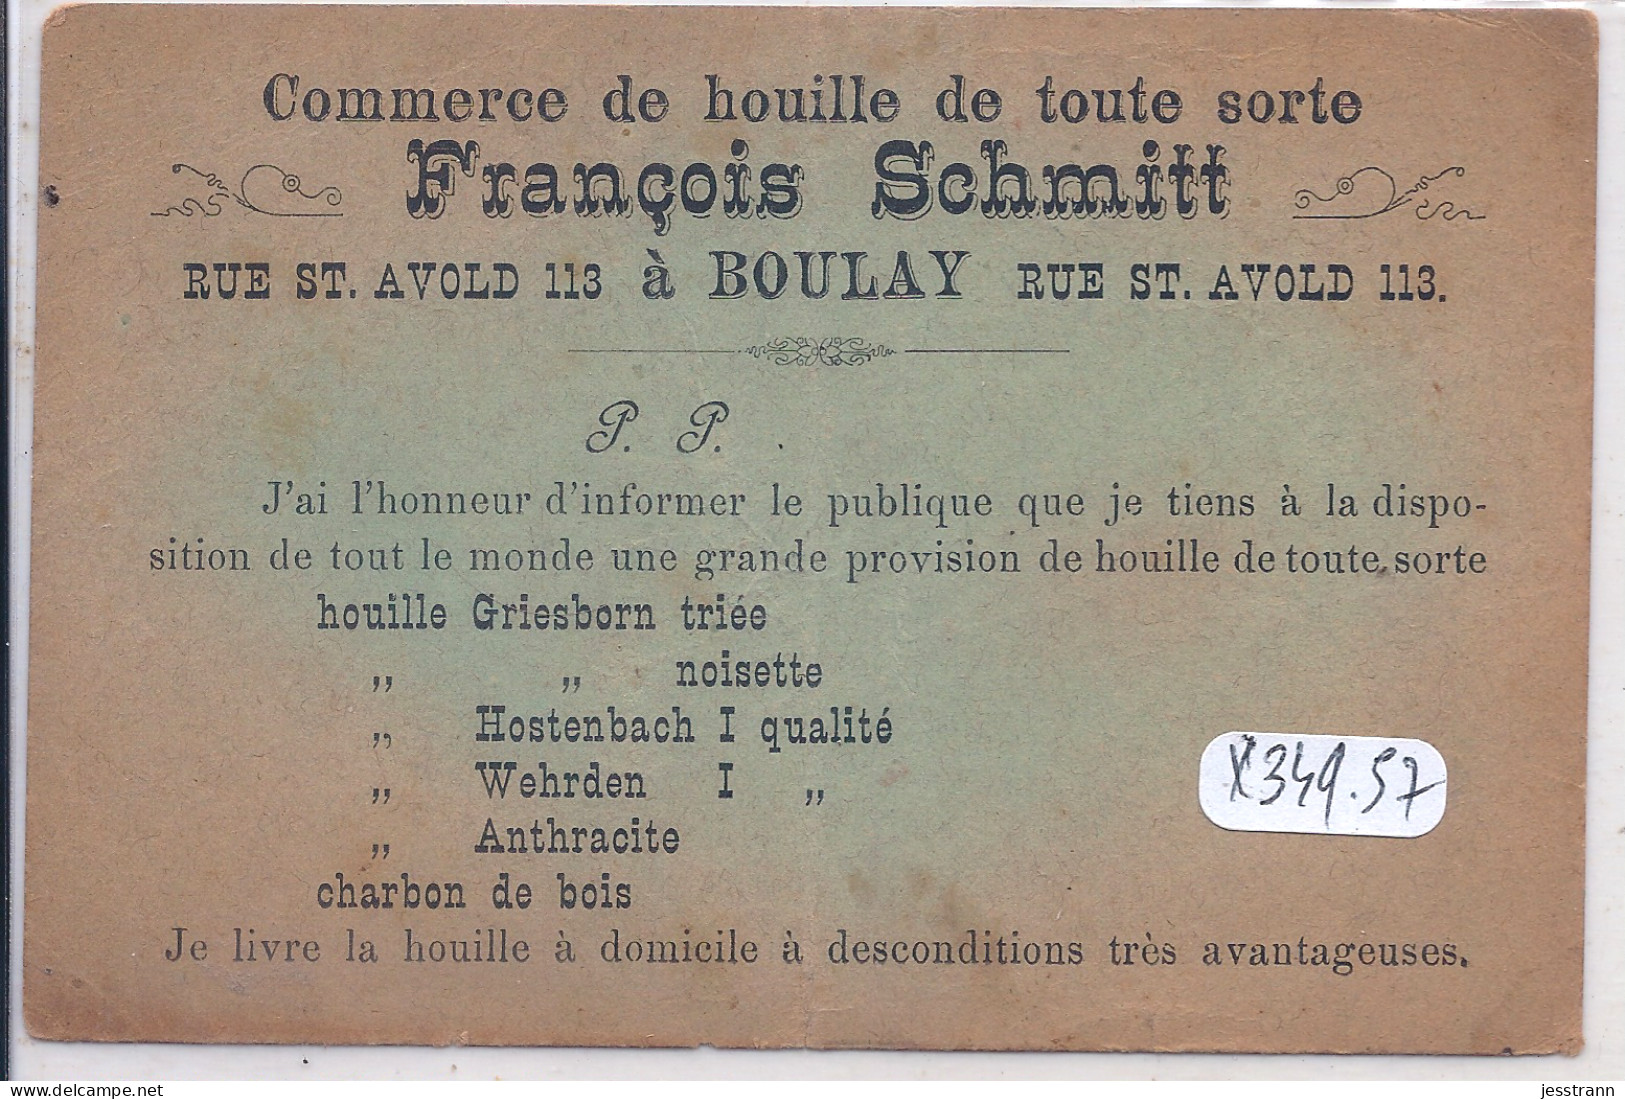 BOULAY-MOSELLE-  MAISON FRANCOIS SCHMITT- COMMERCE DE HOUILLE- CARTE PUBLICITAIRE - Boulay Moselle